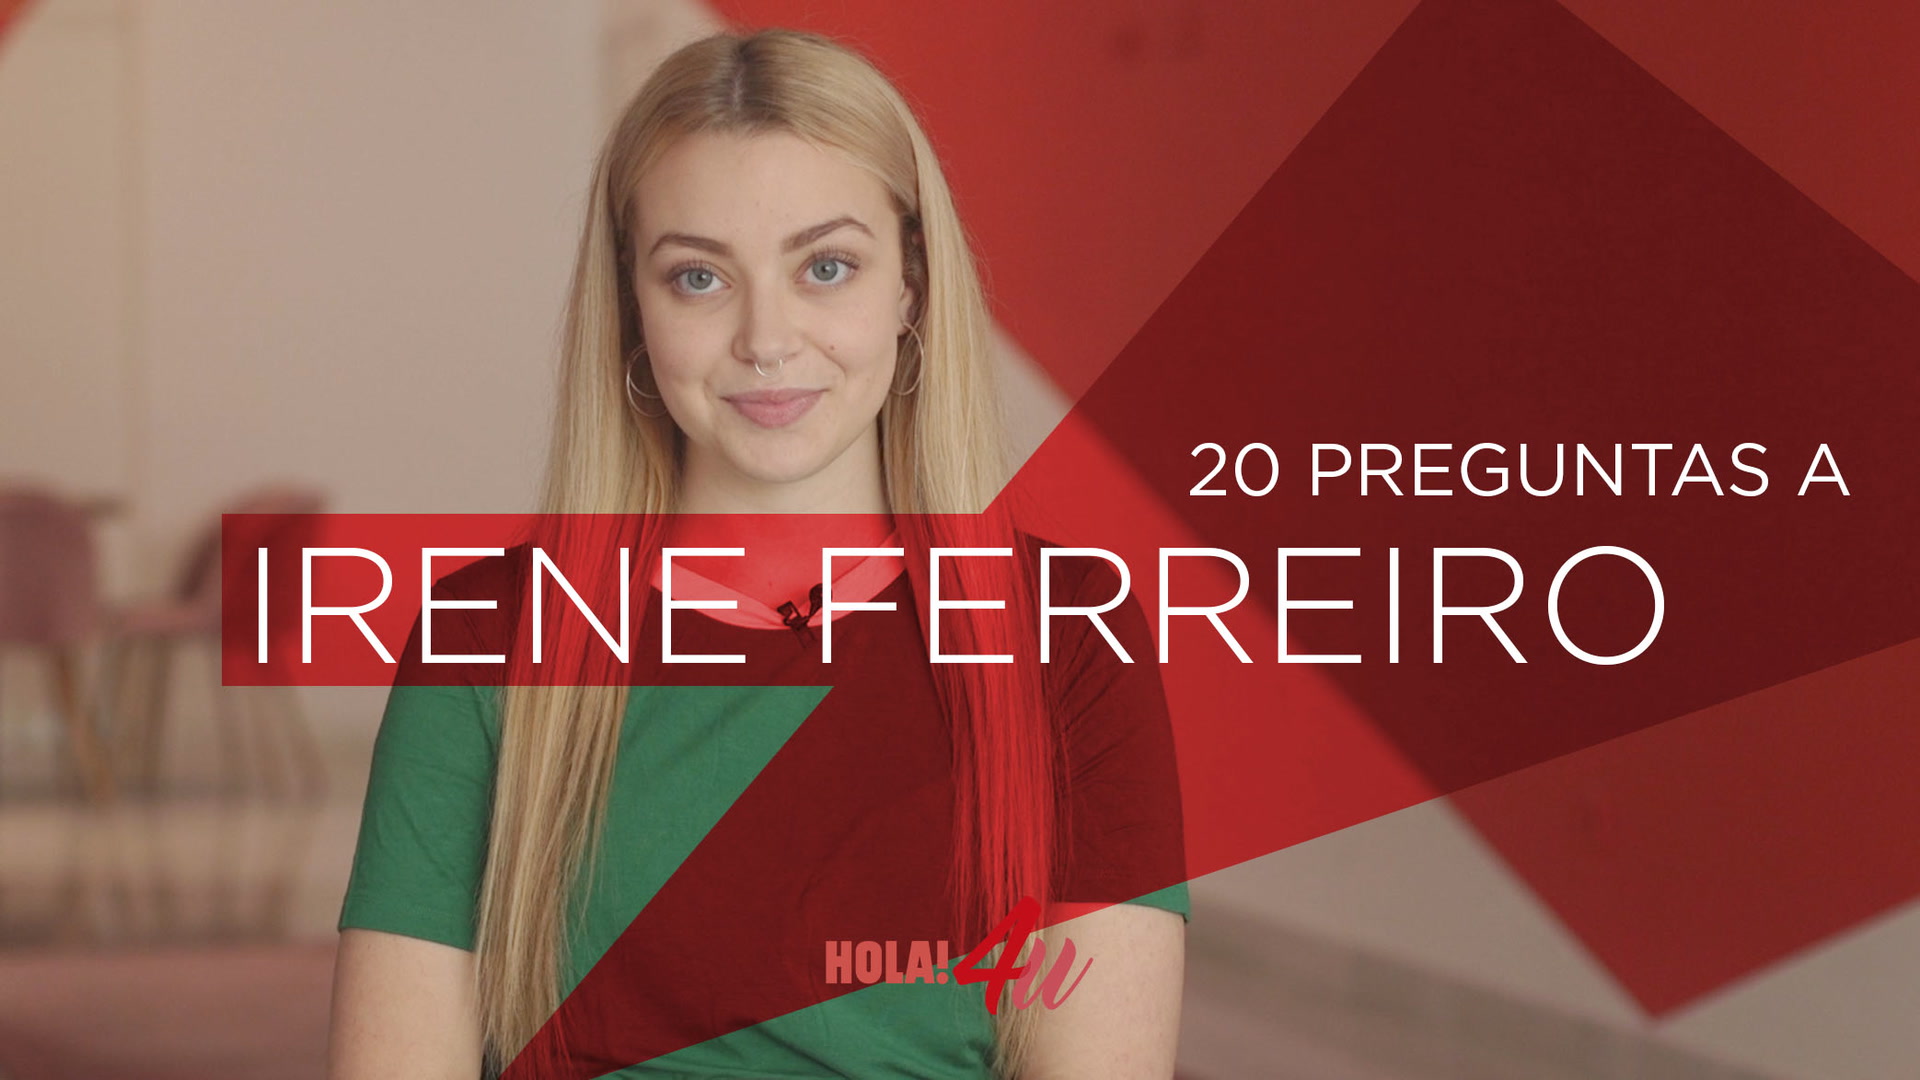 Irene Ferreiro